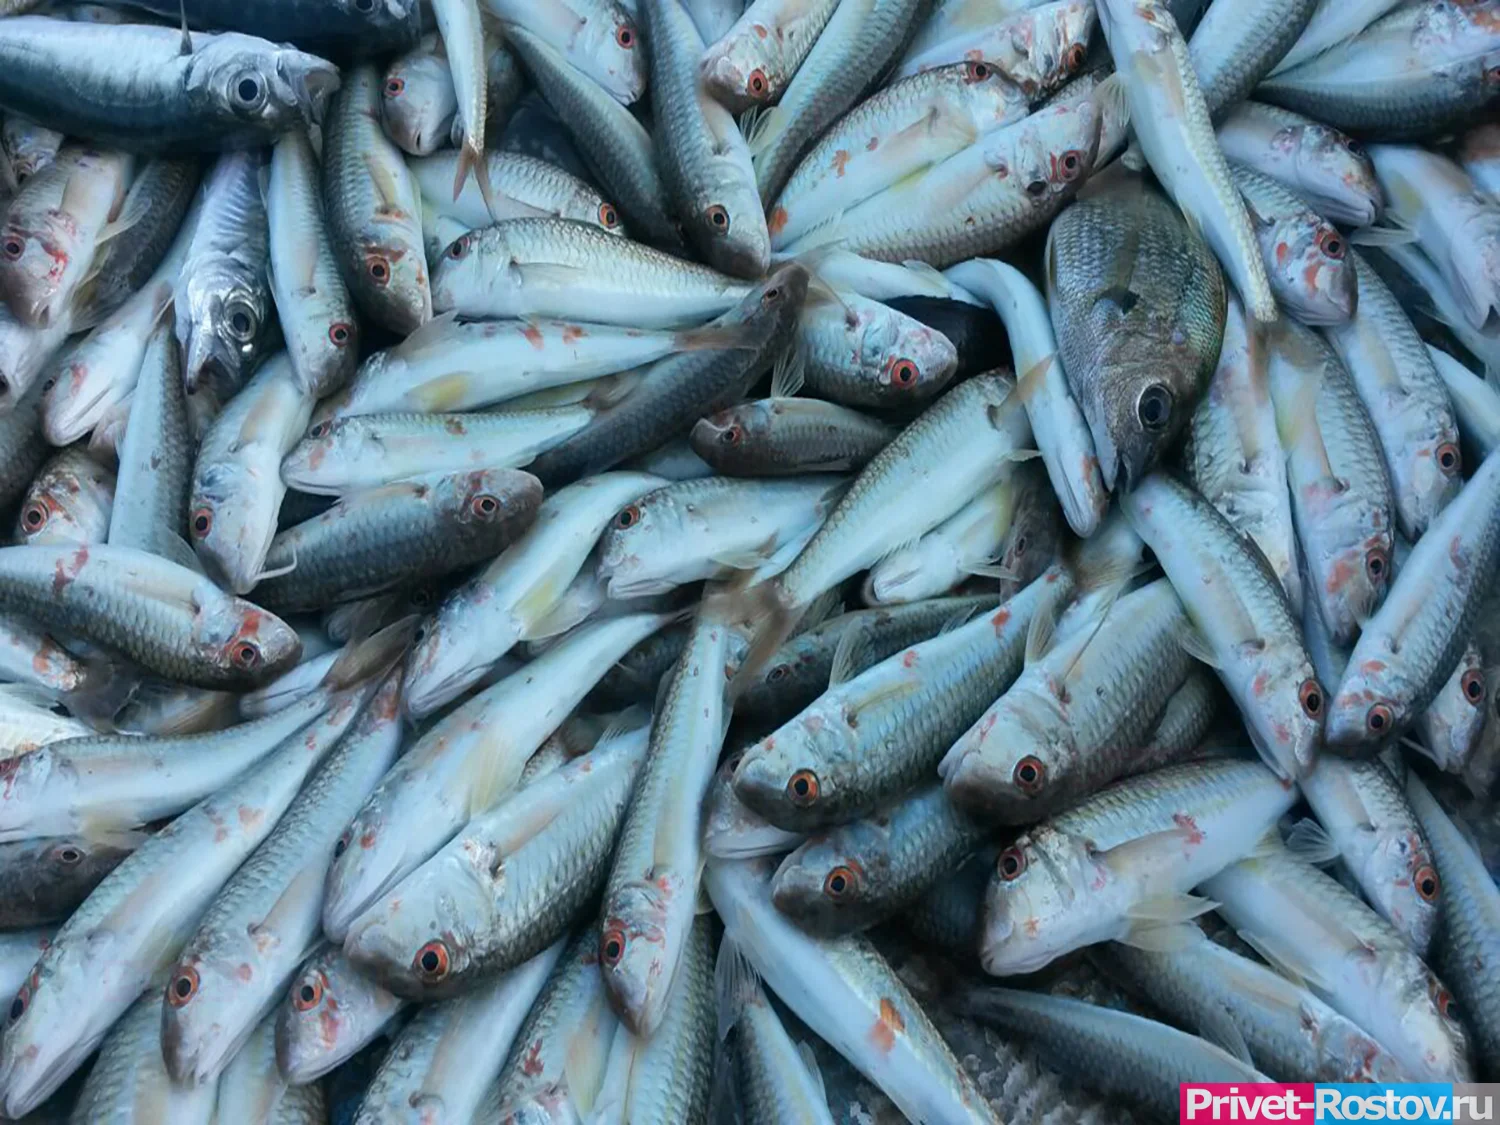 Рыбный морг обнаружили в Таганроге у 54-летнего местного жителя